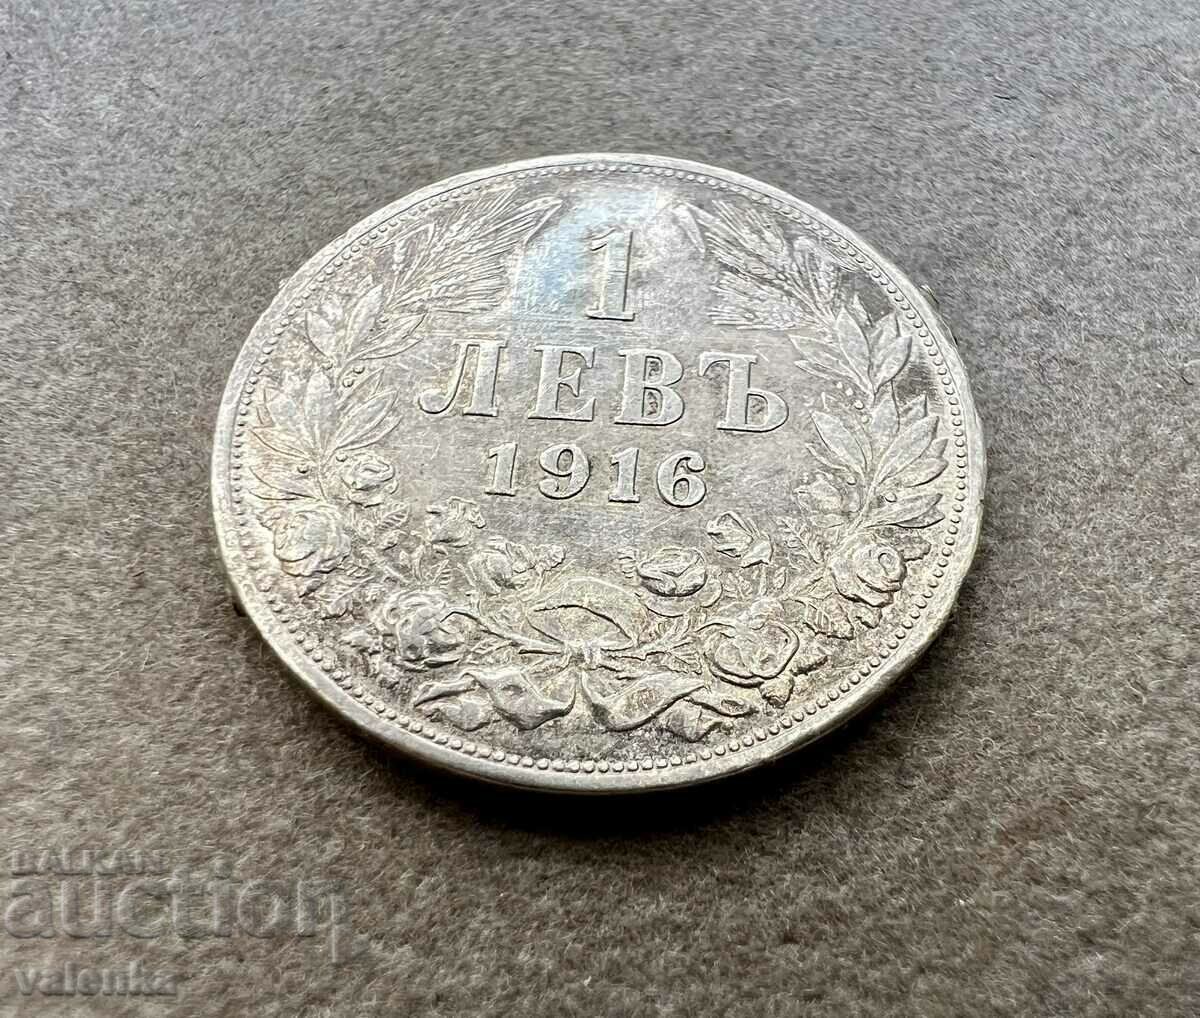 EXTREMELY RARE coin 1 BGN 1916 silver - ORIGINAL